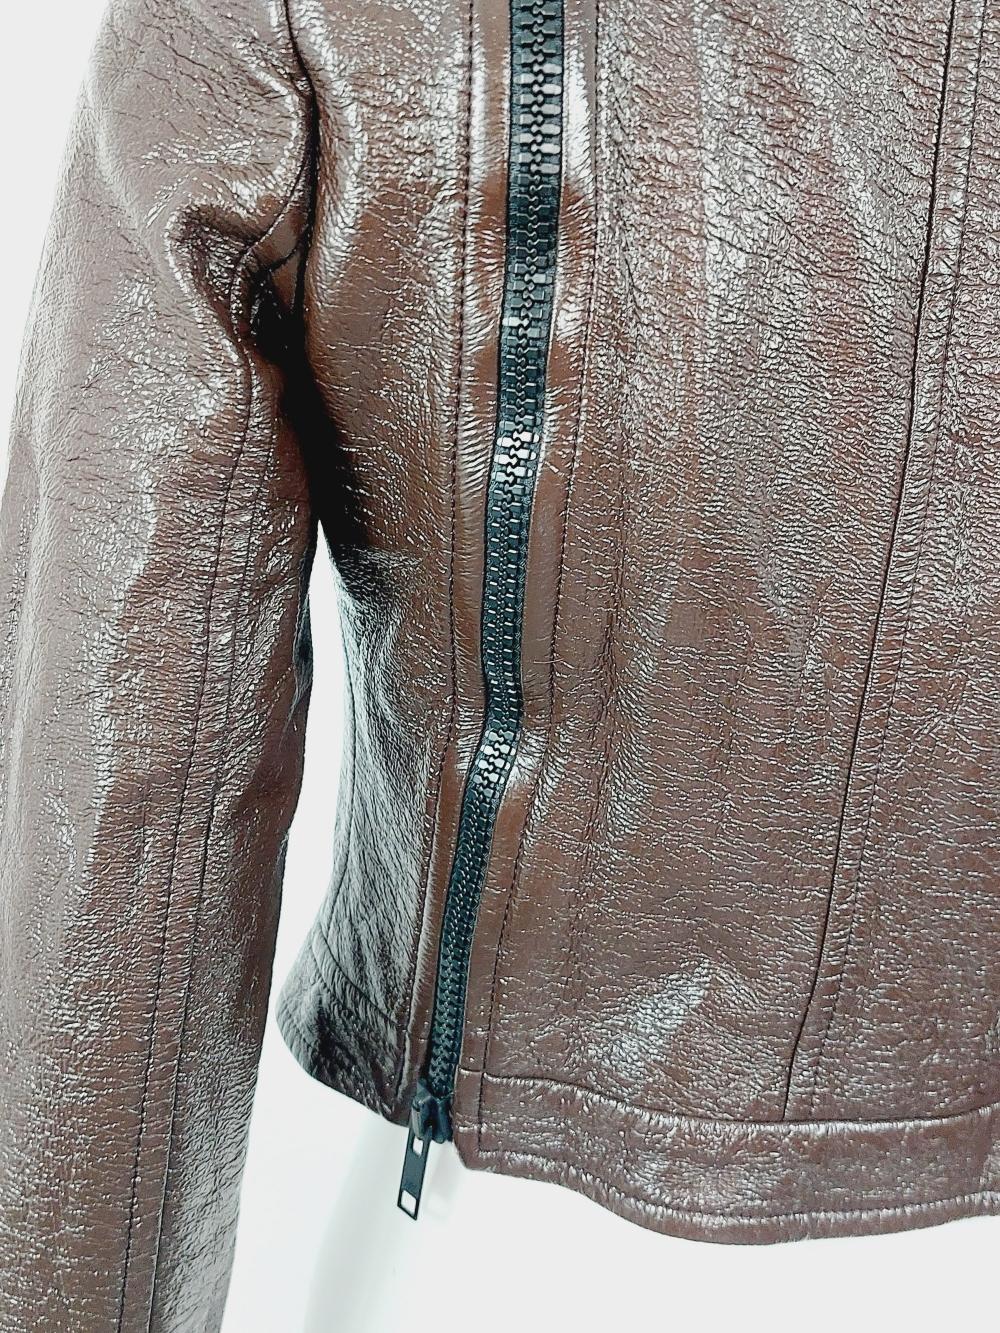 Curréges Paris Brown Shiny Wet Look Logo Mod Vinyl Faux Leather Zip Jacket For Sale 1